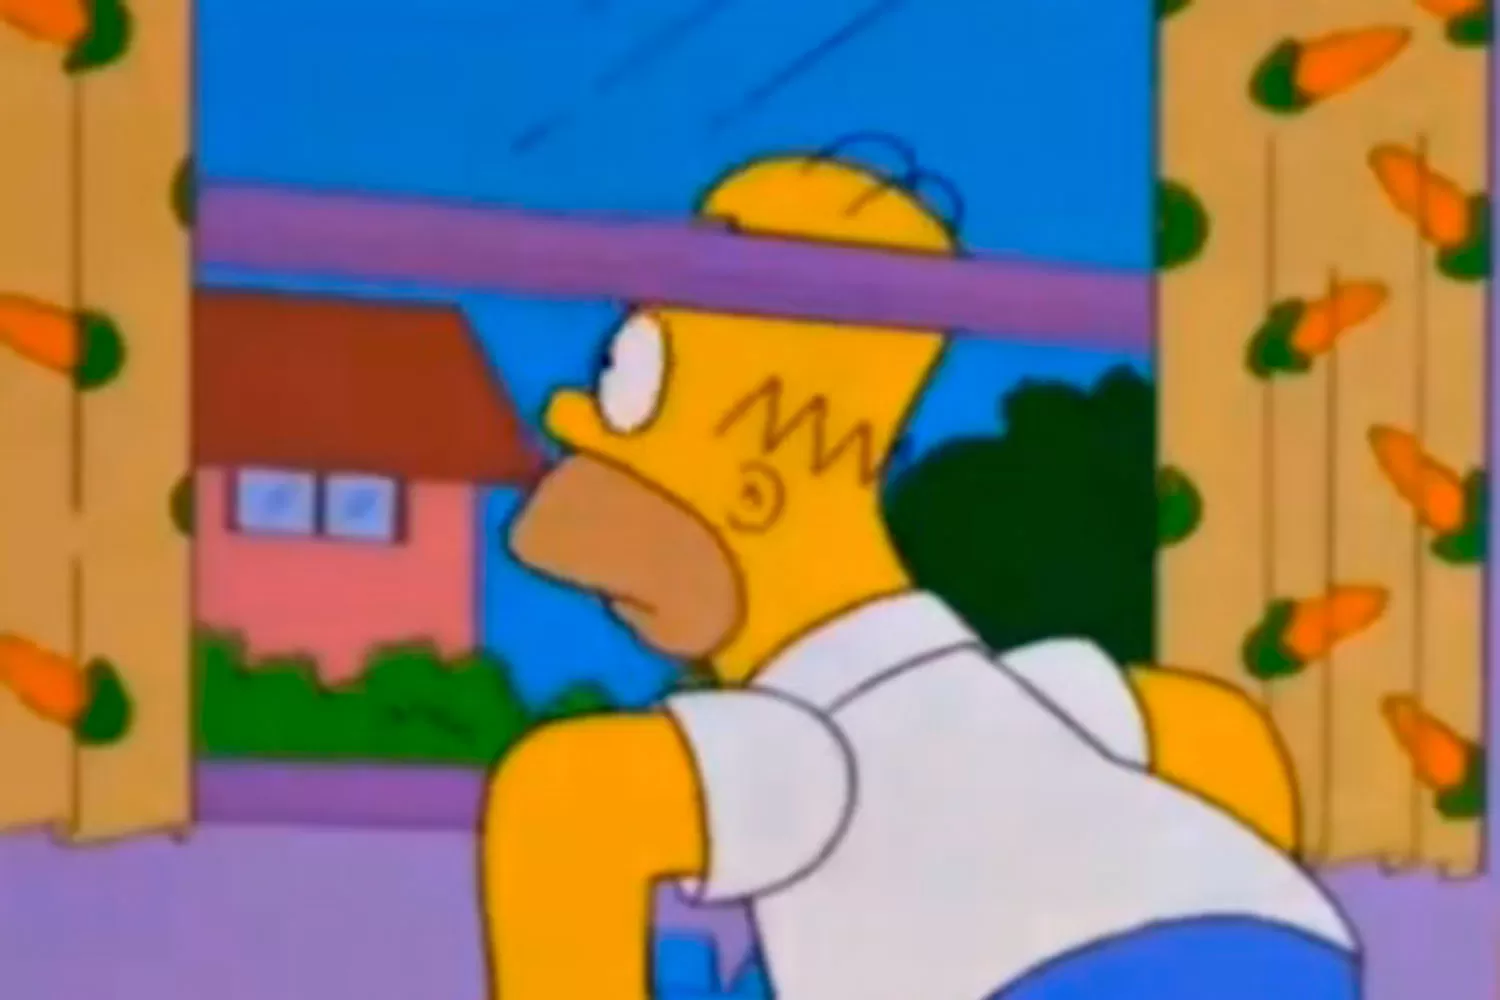 El Milhouse Challenge se hizo viral gracias a un momento inolvidable de Los Simpson